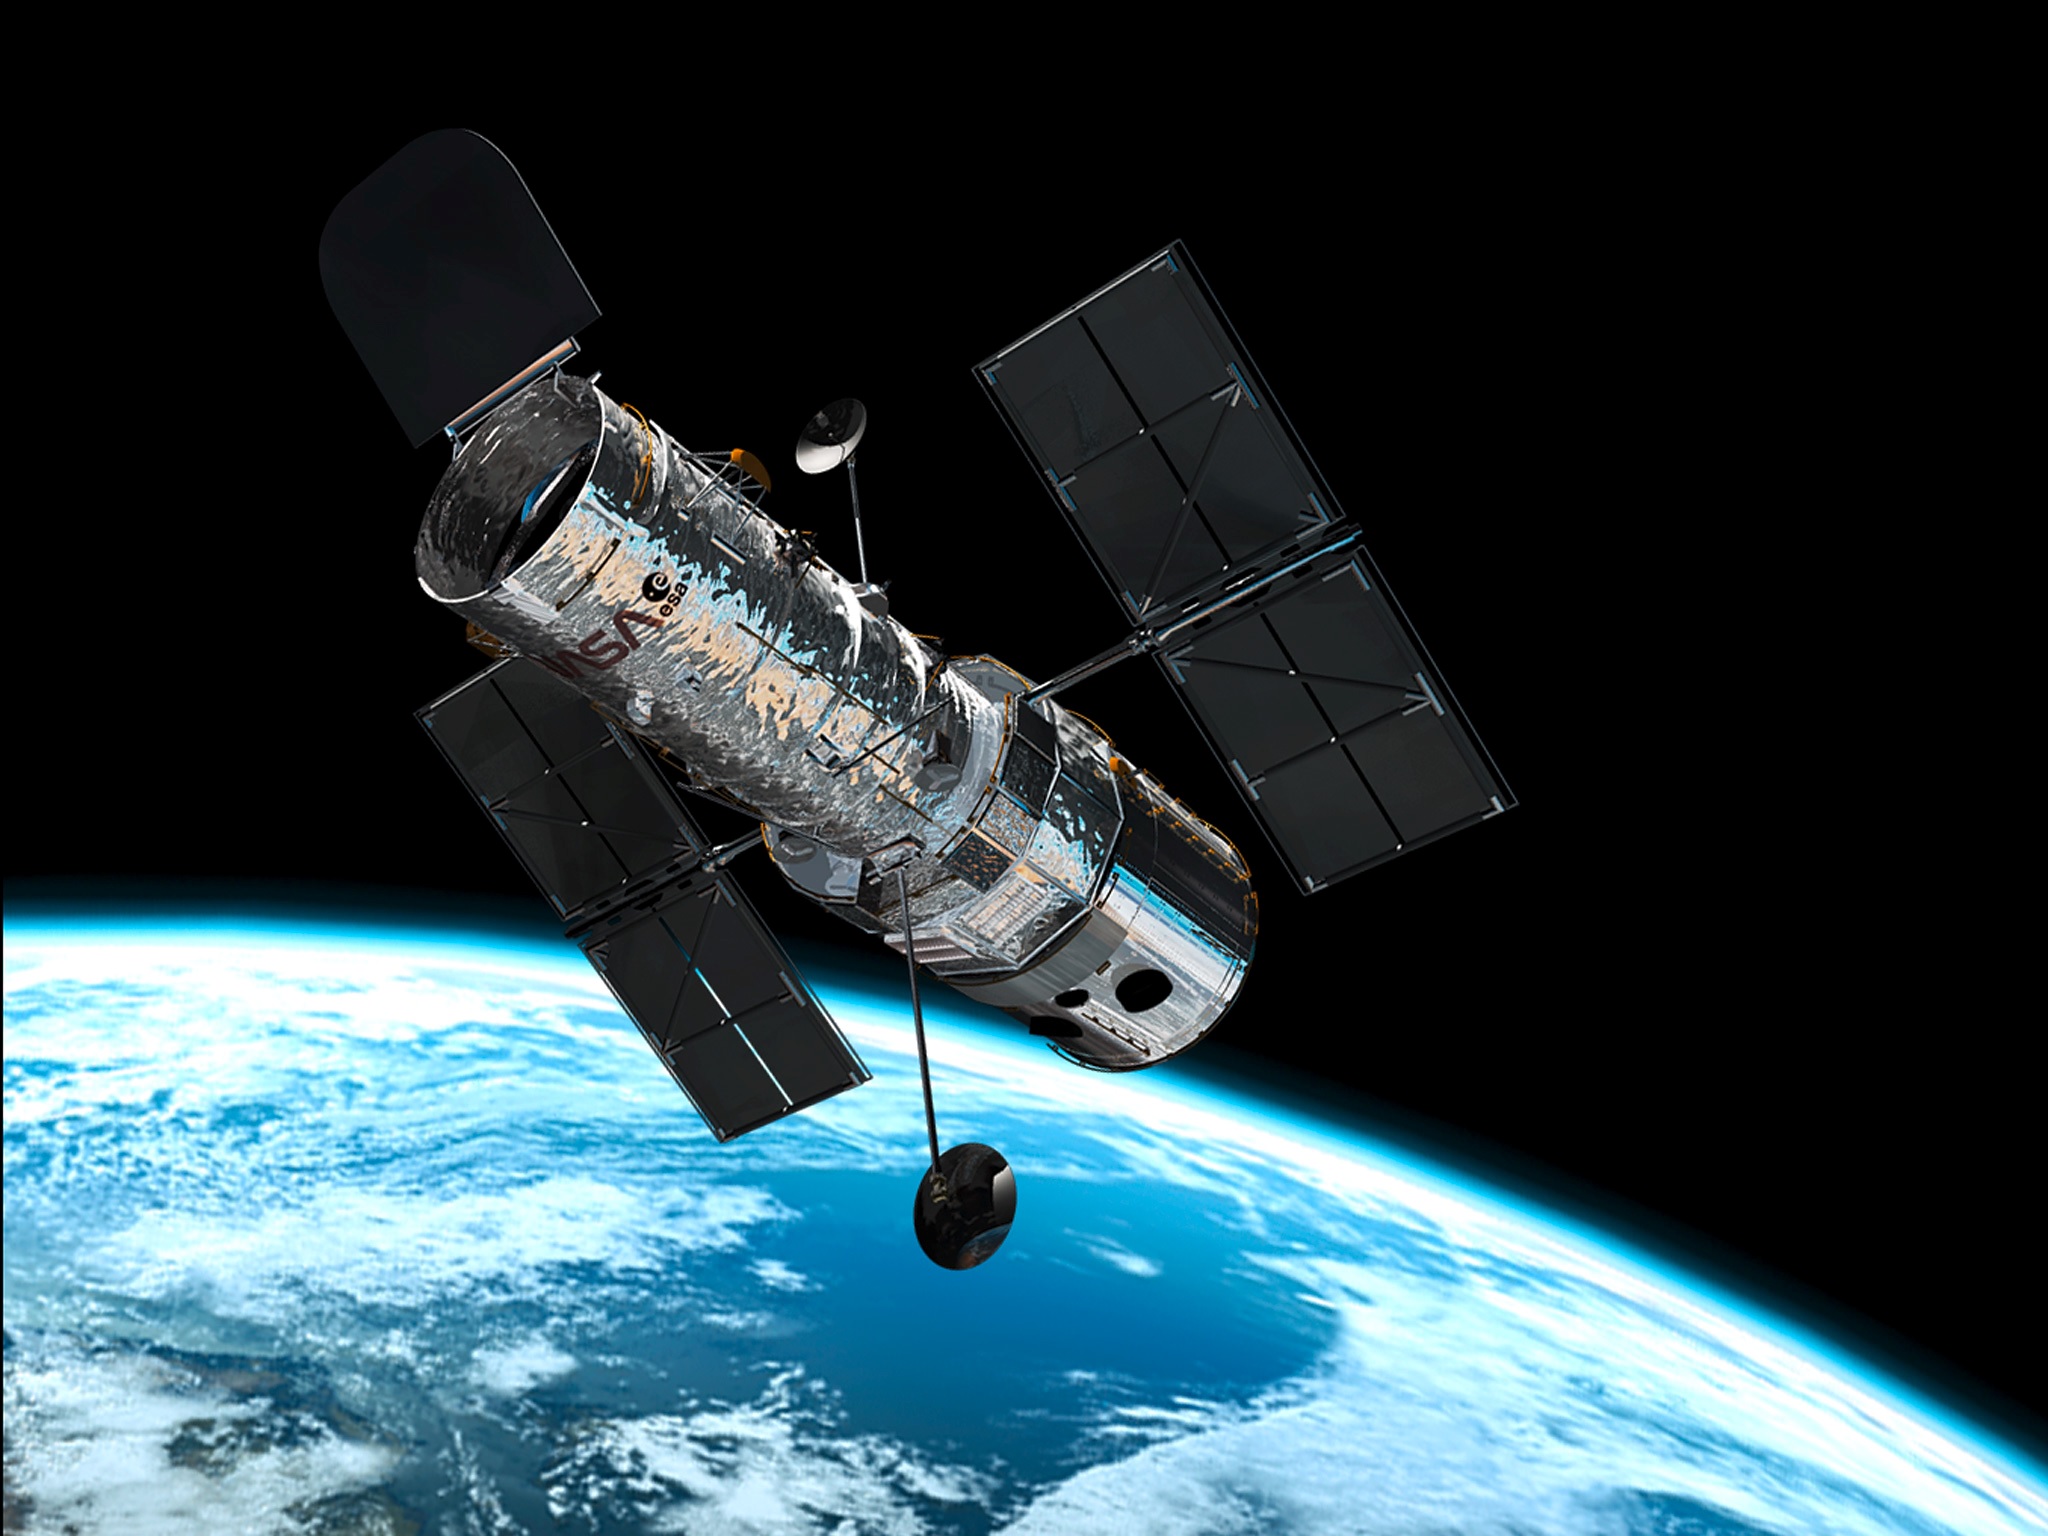 Contaminar Estrecho nativo Lanzarán nuevo telescopio superior al Hubble - Yvke Mundial | De La Mano  Con El Pueblo